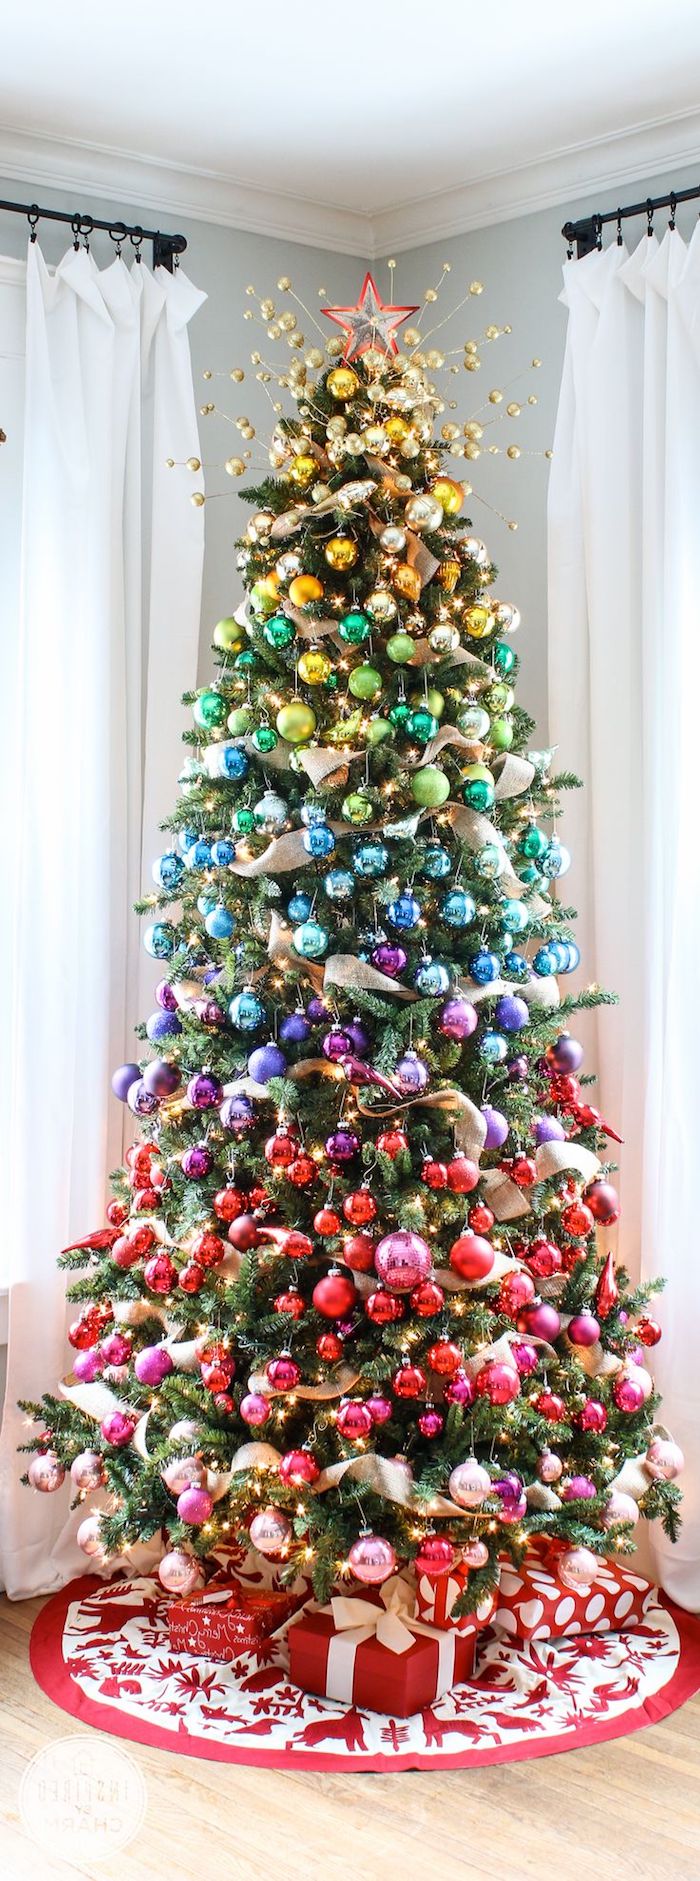 Tannenbaum mit bunten Christbaumkugeln in Schichten schmücken, Dekoband zwischen den Weihnachtskugeln, Geschenke unter dem Baum 